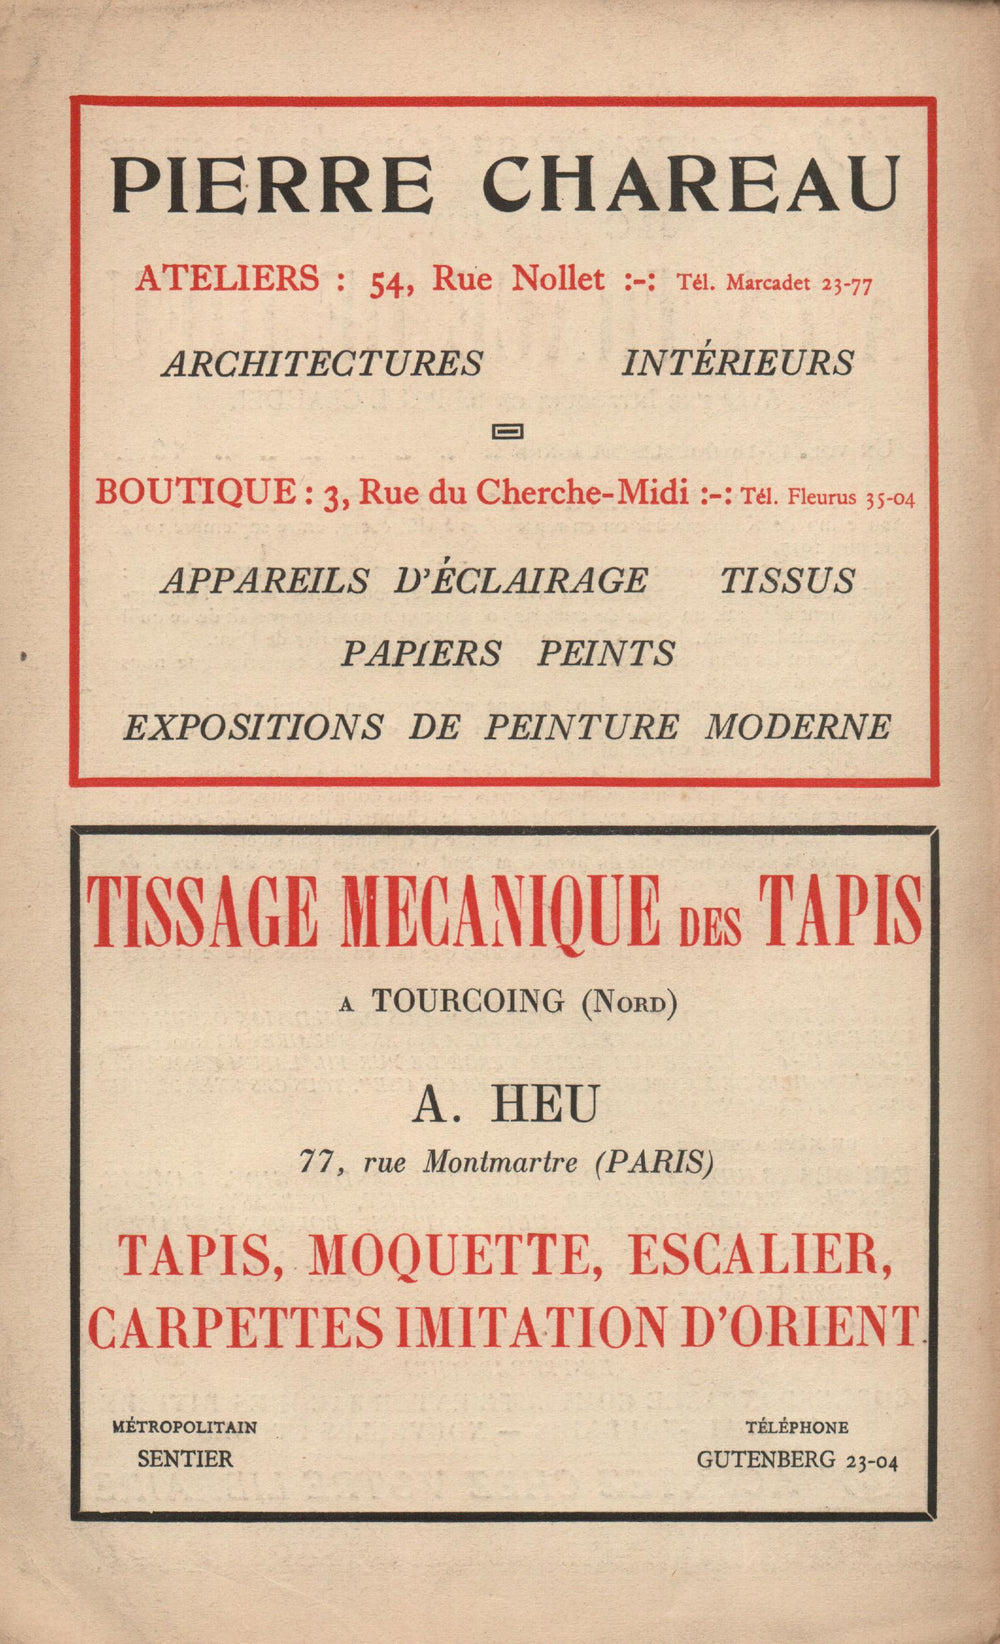 La Nouvelle Revue Française N' 146 (Novembre 1925)